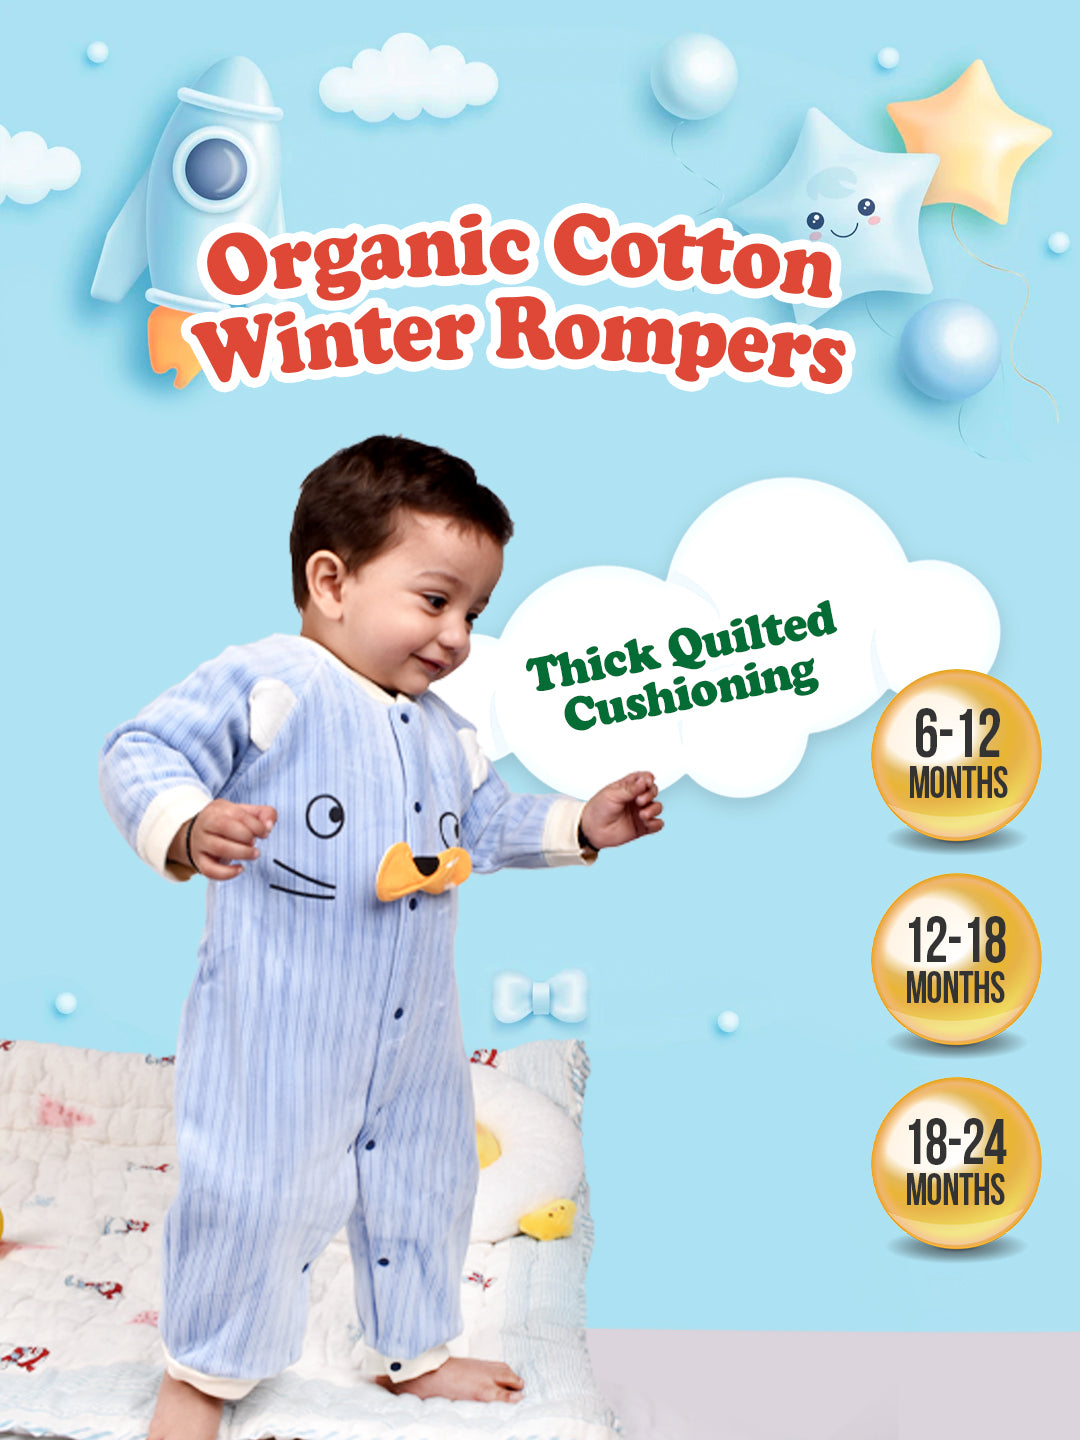 Moms Home Organic Cotton Baby Full Length Winter Romper Gift Set 14 - Green